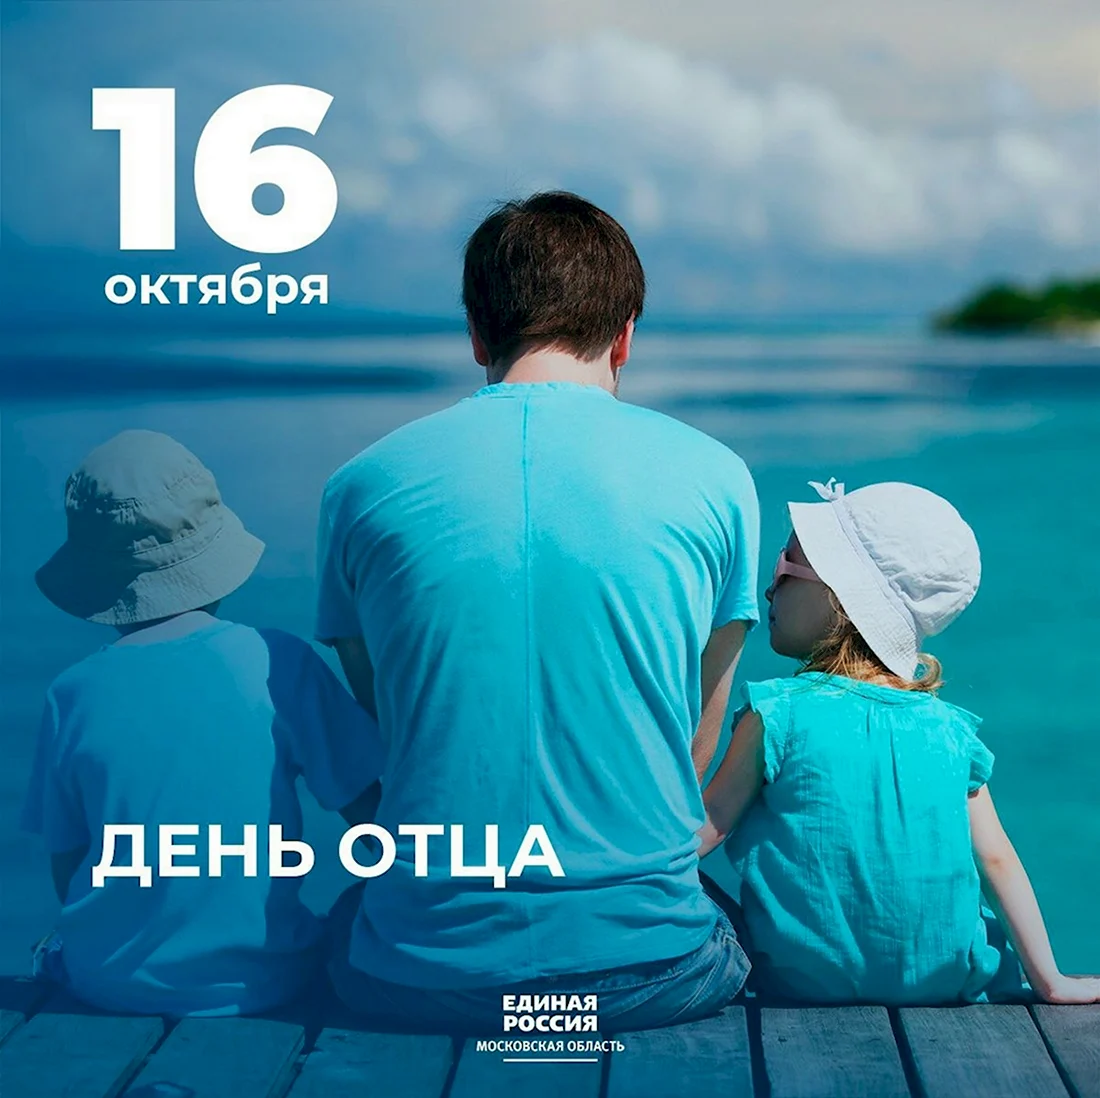 16 Октября день отца в России